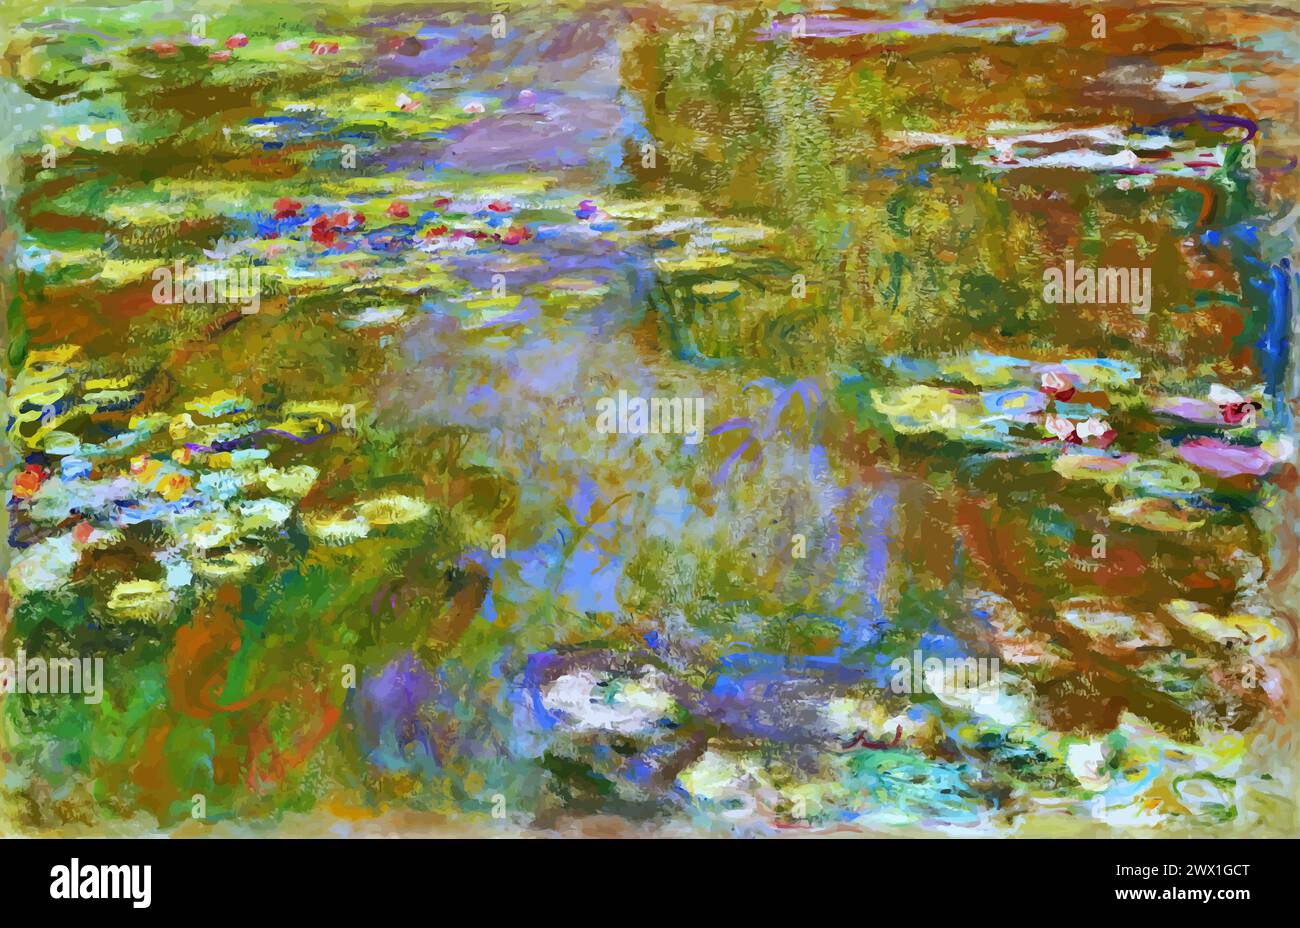 Bassin de nénuphars, 1917-19 (peinture) par l'artiste Monet, Claude (1840-1926) Français. Illustration de Vecteur